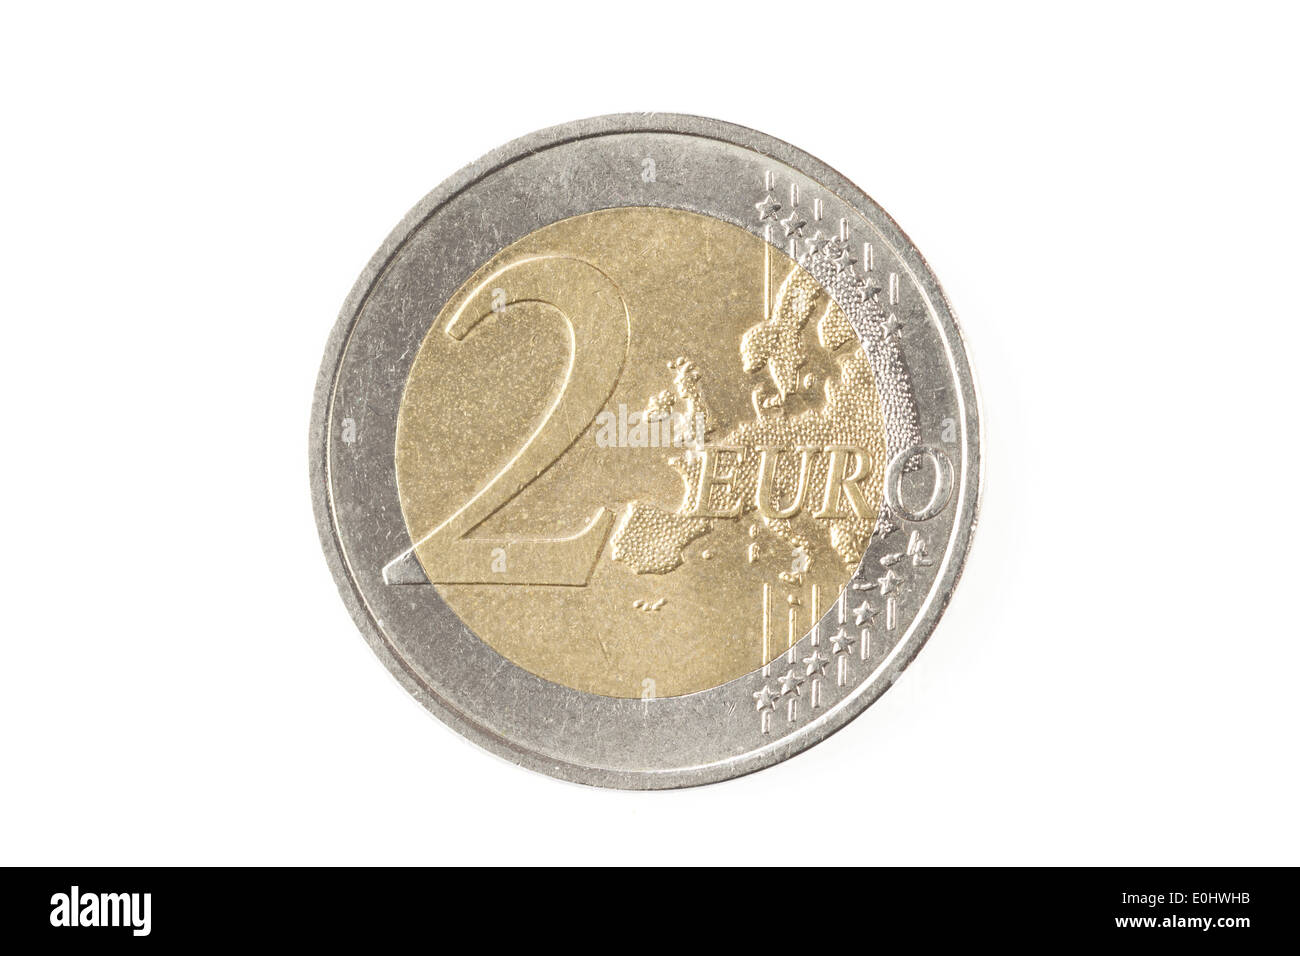 Moneta da 2 euro immagini e fotografie stock ad alta risoluzione - Alamy